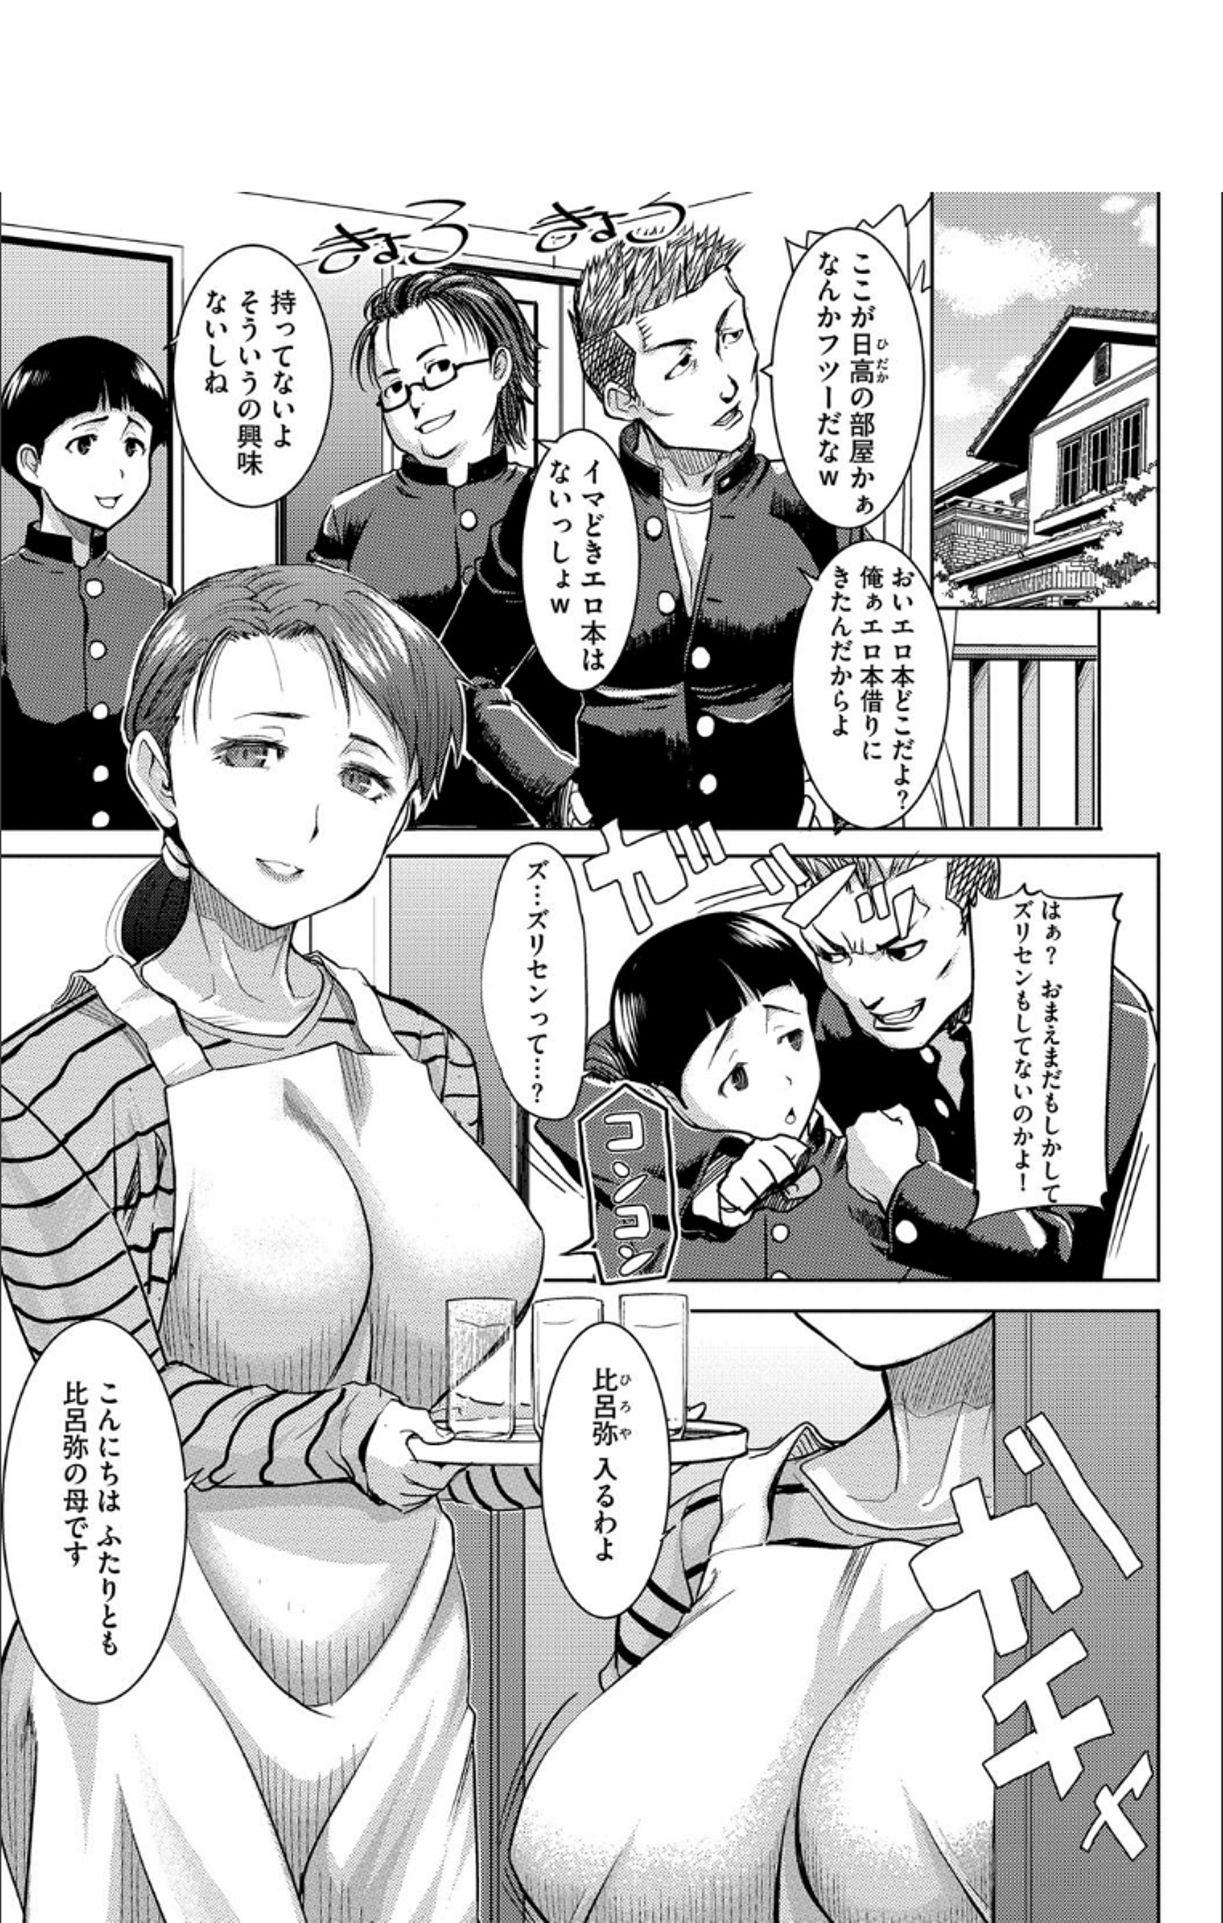 Dicks Boku no Kazoku o Sarashimasu + DMM Gentei Tokuten Paper Hot Girls Fucking - Page 6